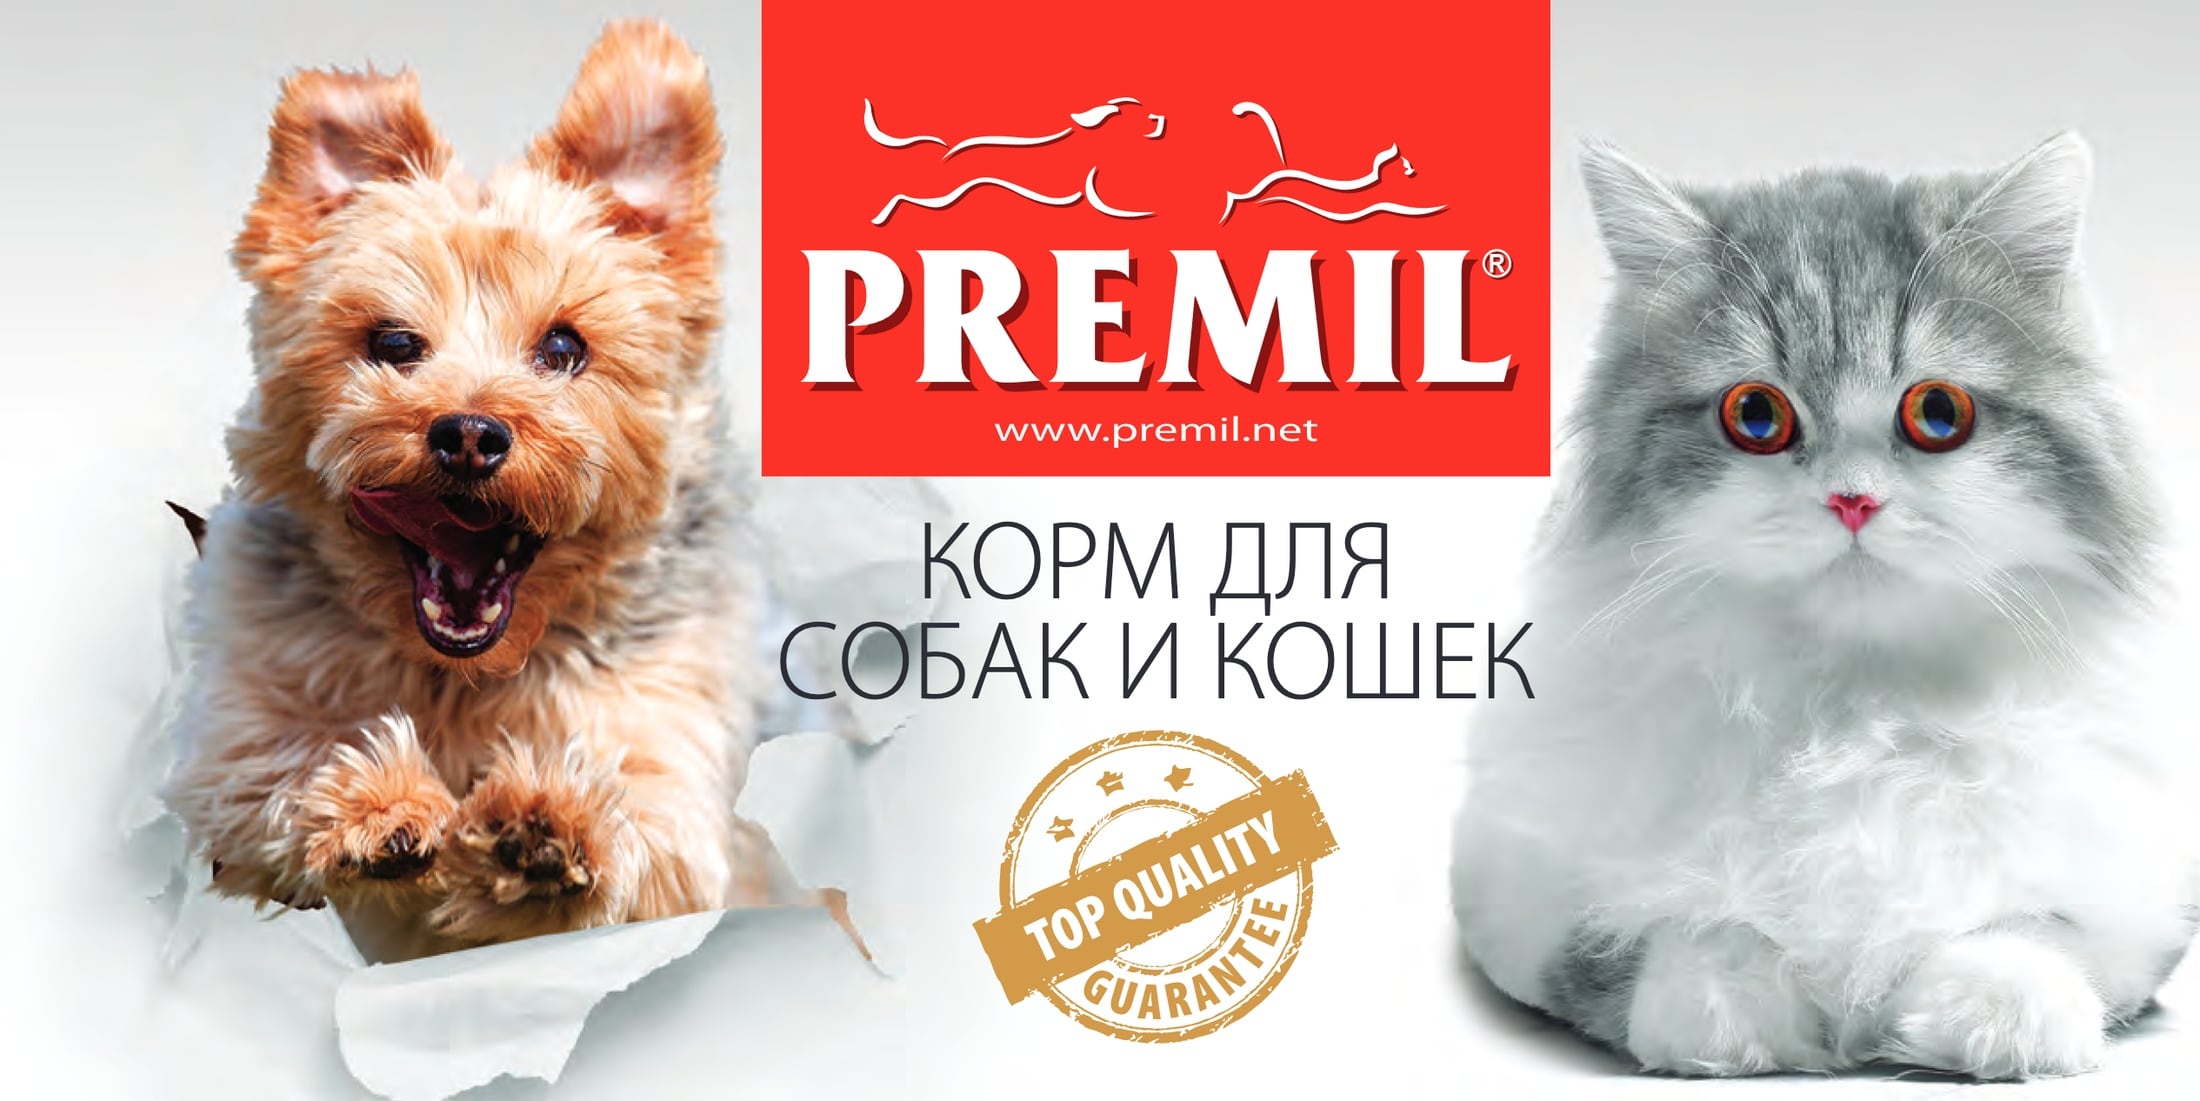 купить Premil с бесплатной доставкой в Калининграде